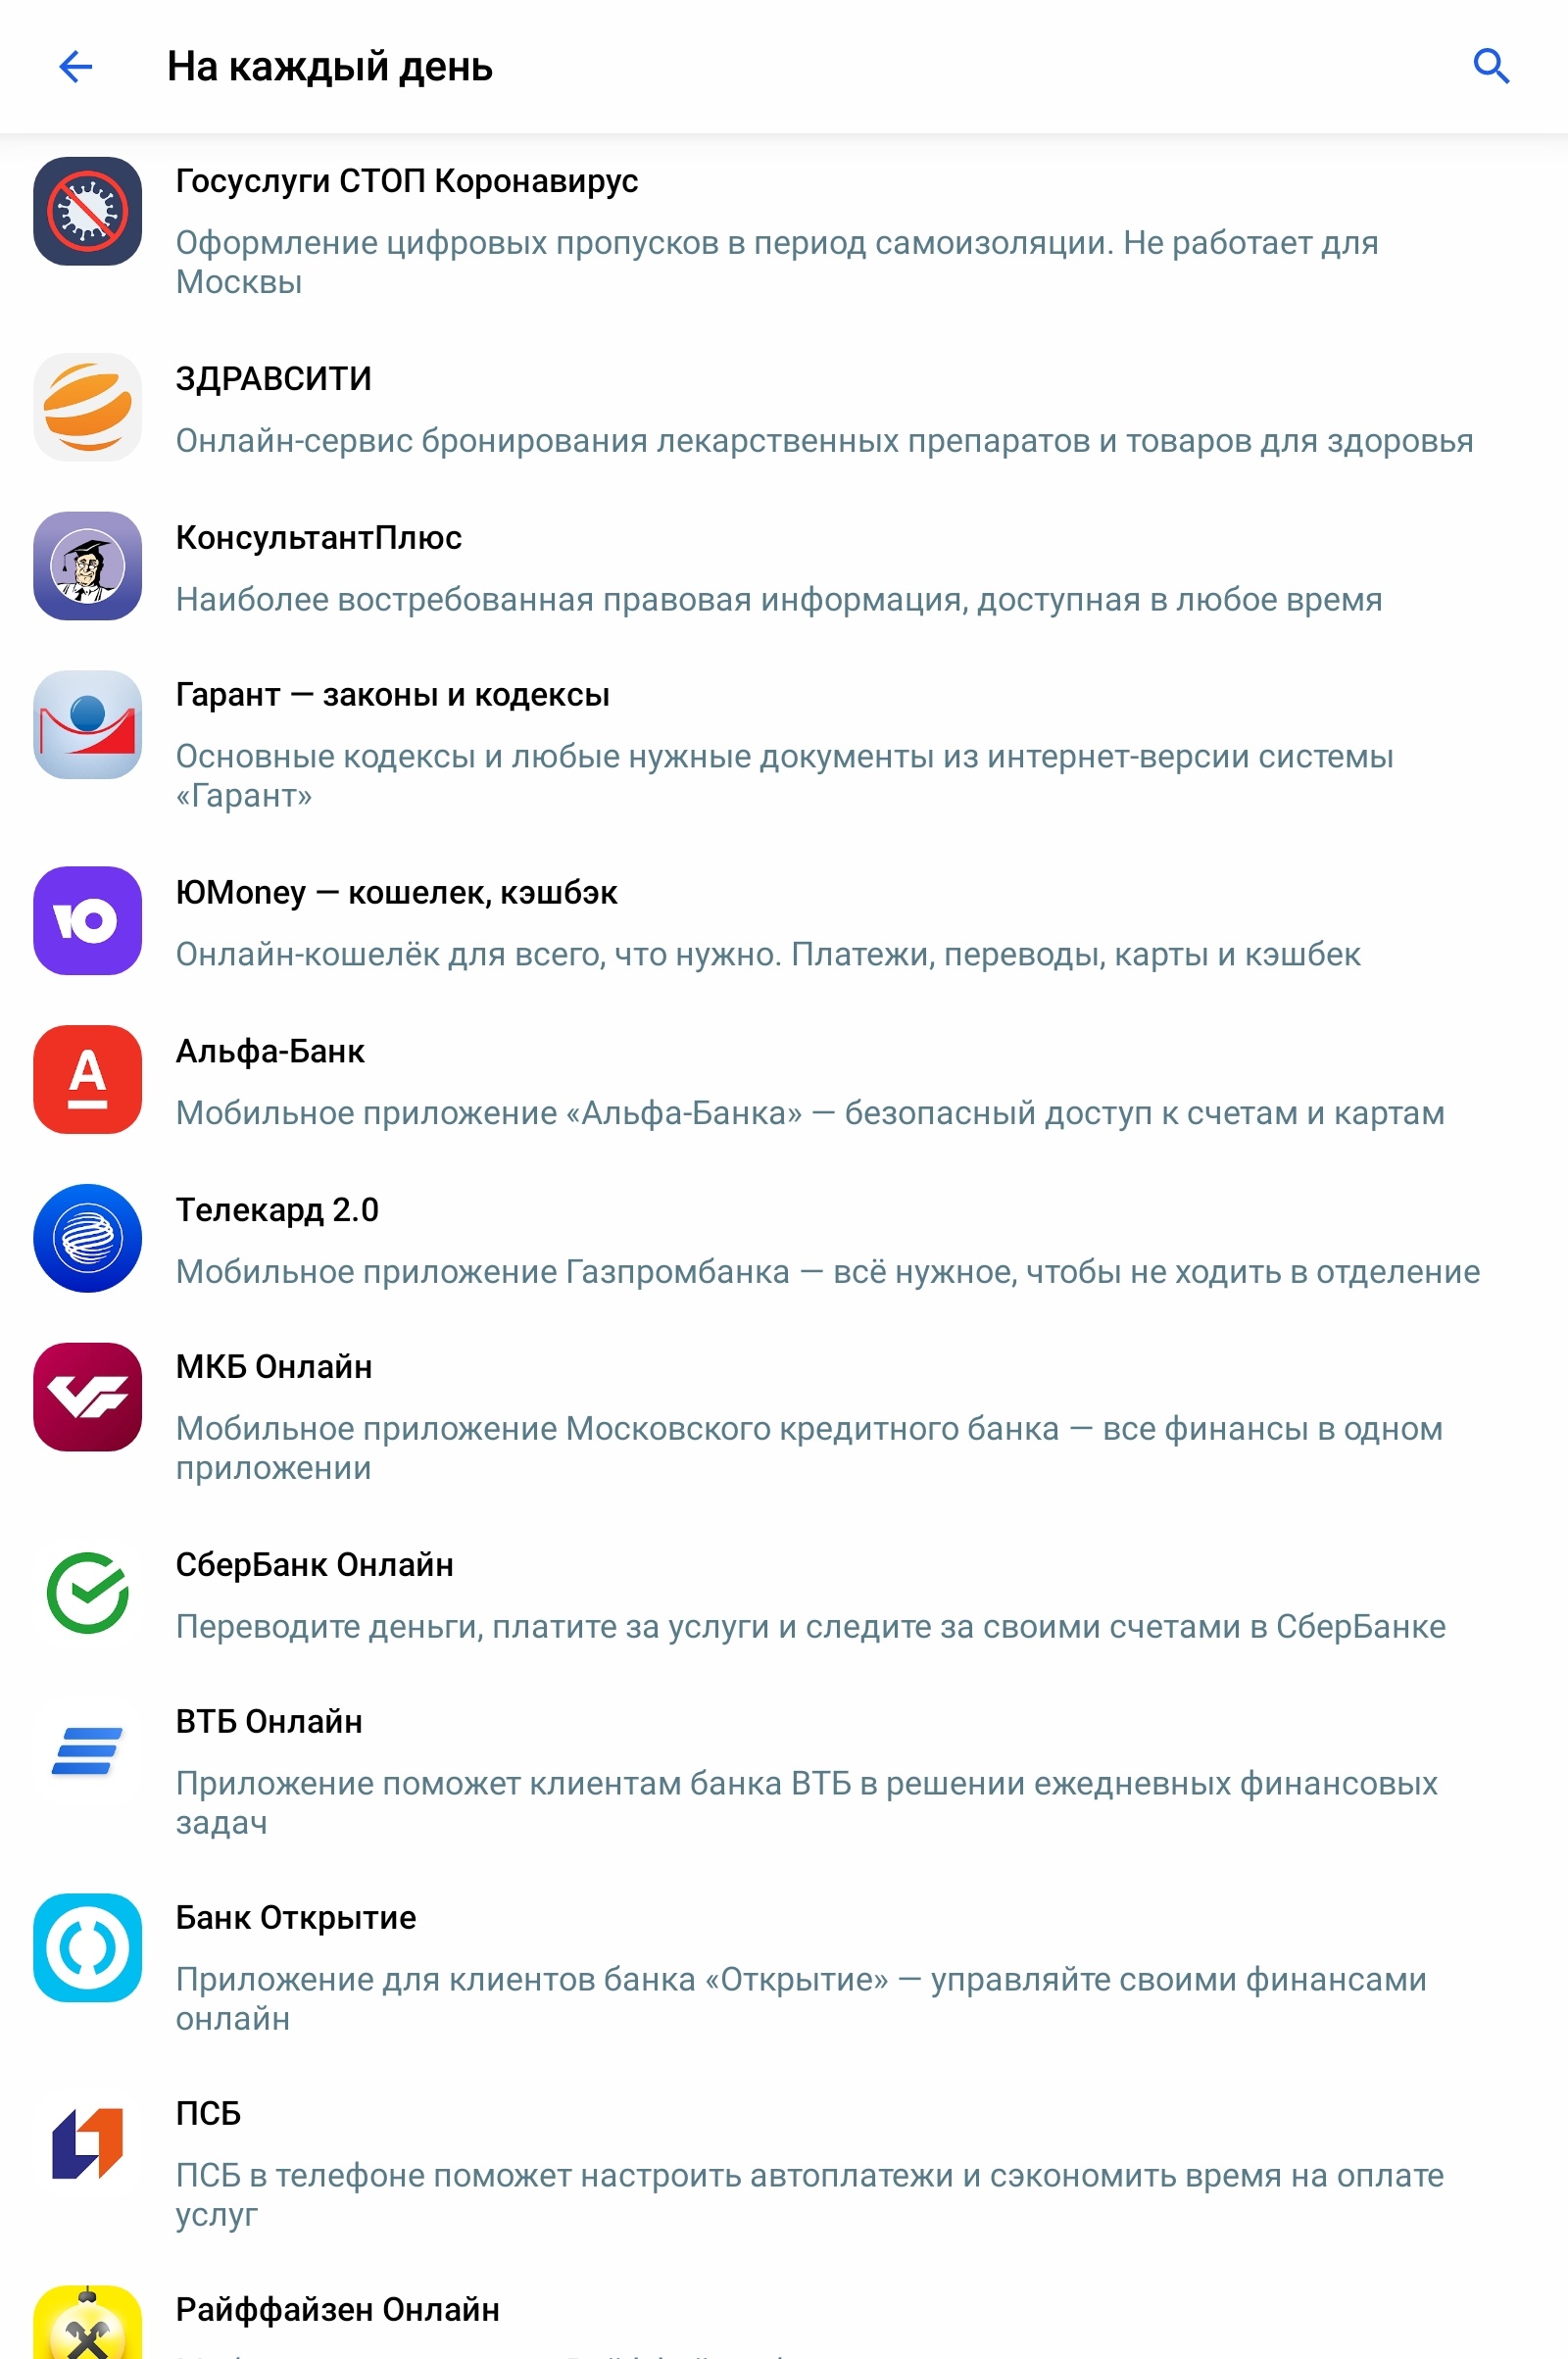 Как именно выглядит предустановка российского ПО на мобильные устройства - 7